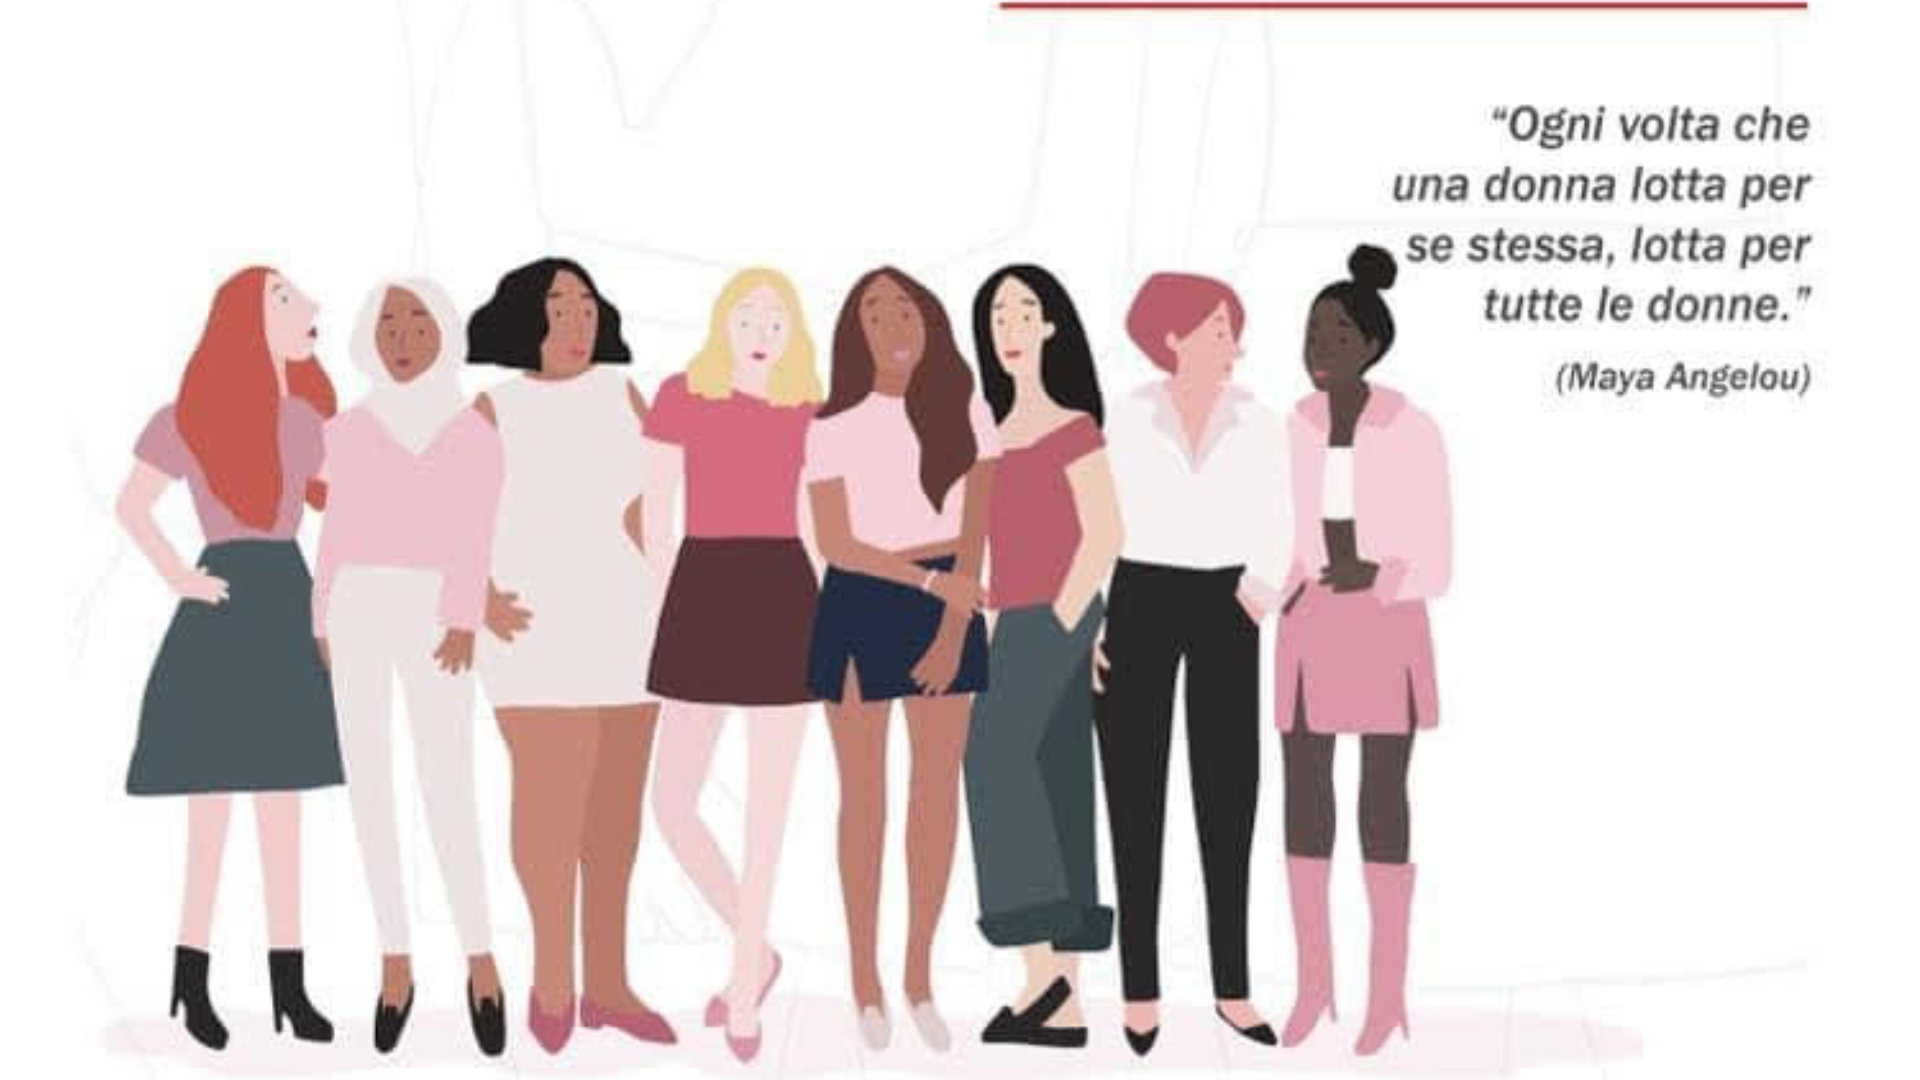 ‘Belle Ciao’, la piattaforma per le politiche di genere<br>Lavoro e impresa al femminile nell’evento della Cgil